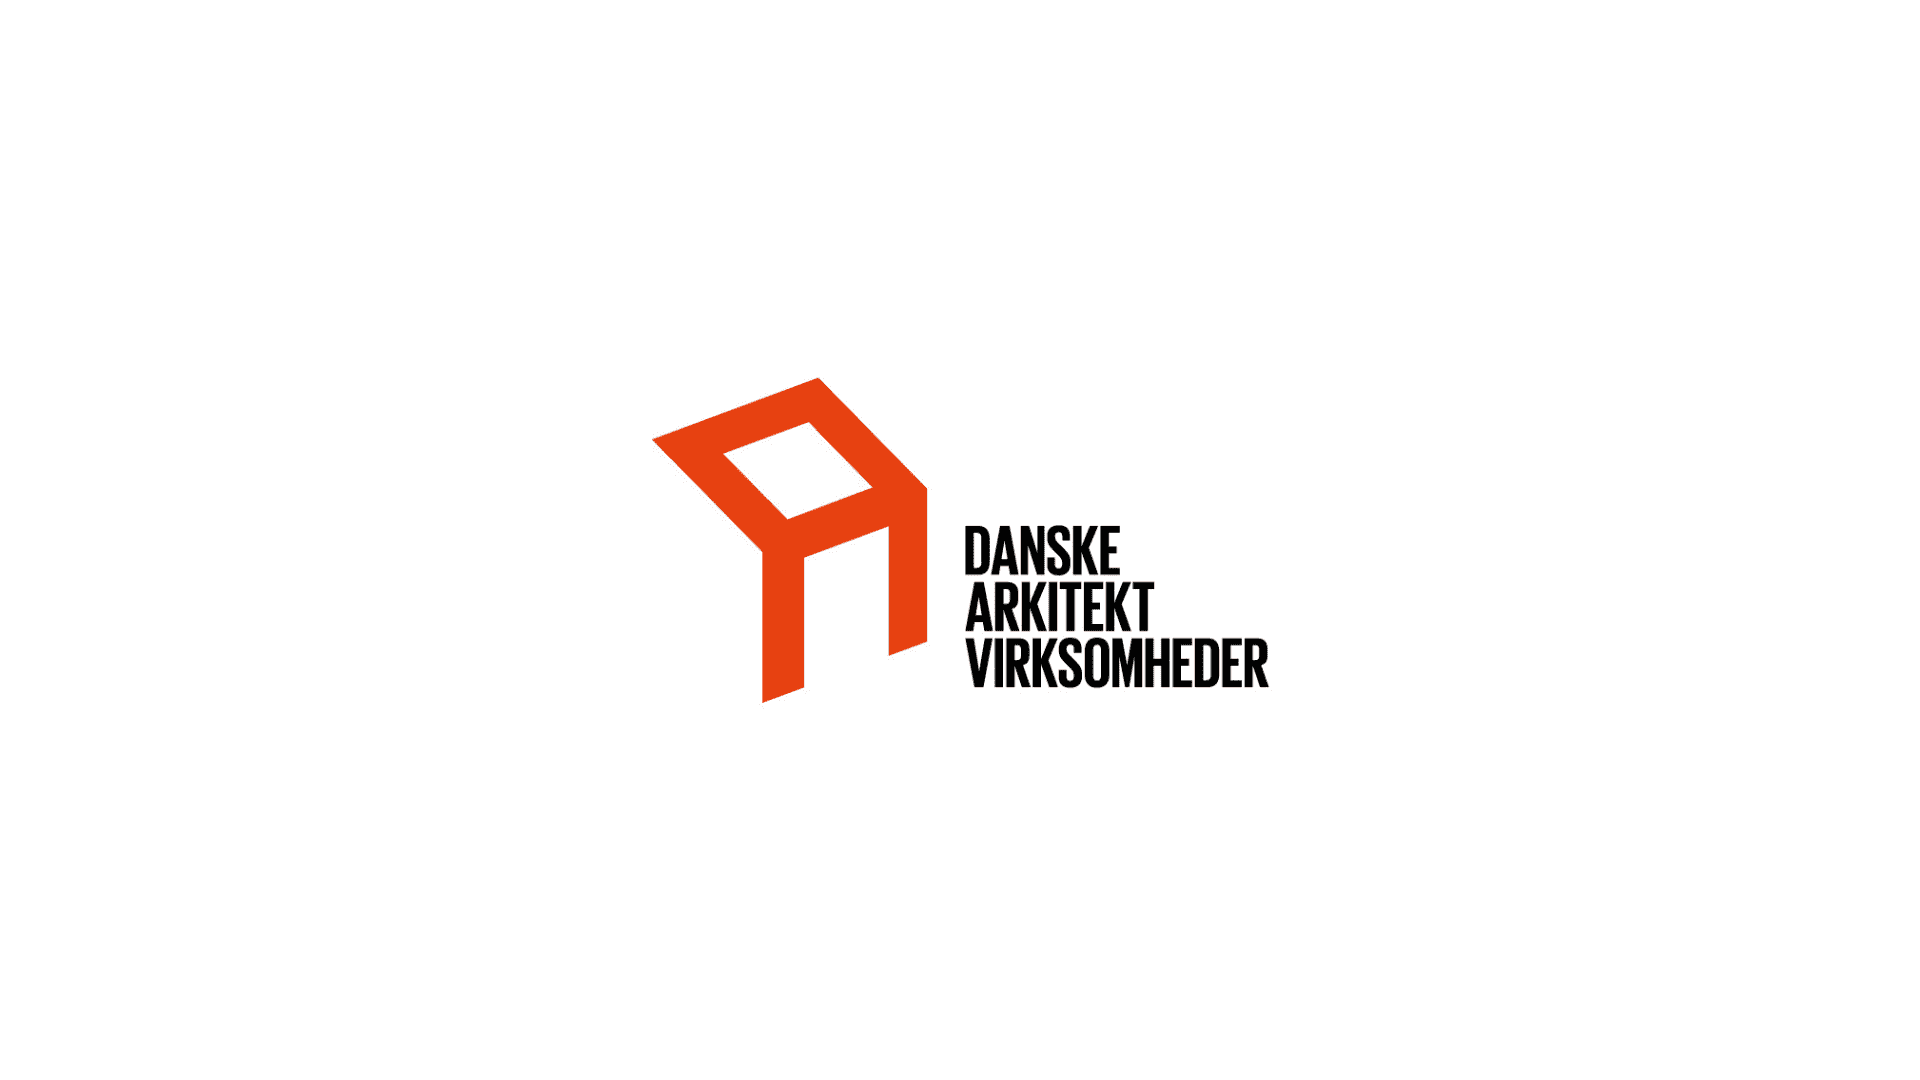 Danske Arkitekt virksomheder logo